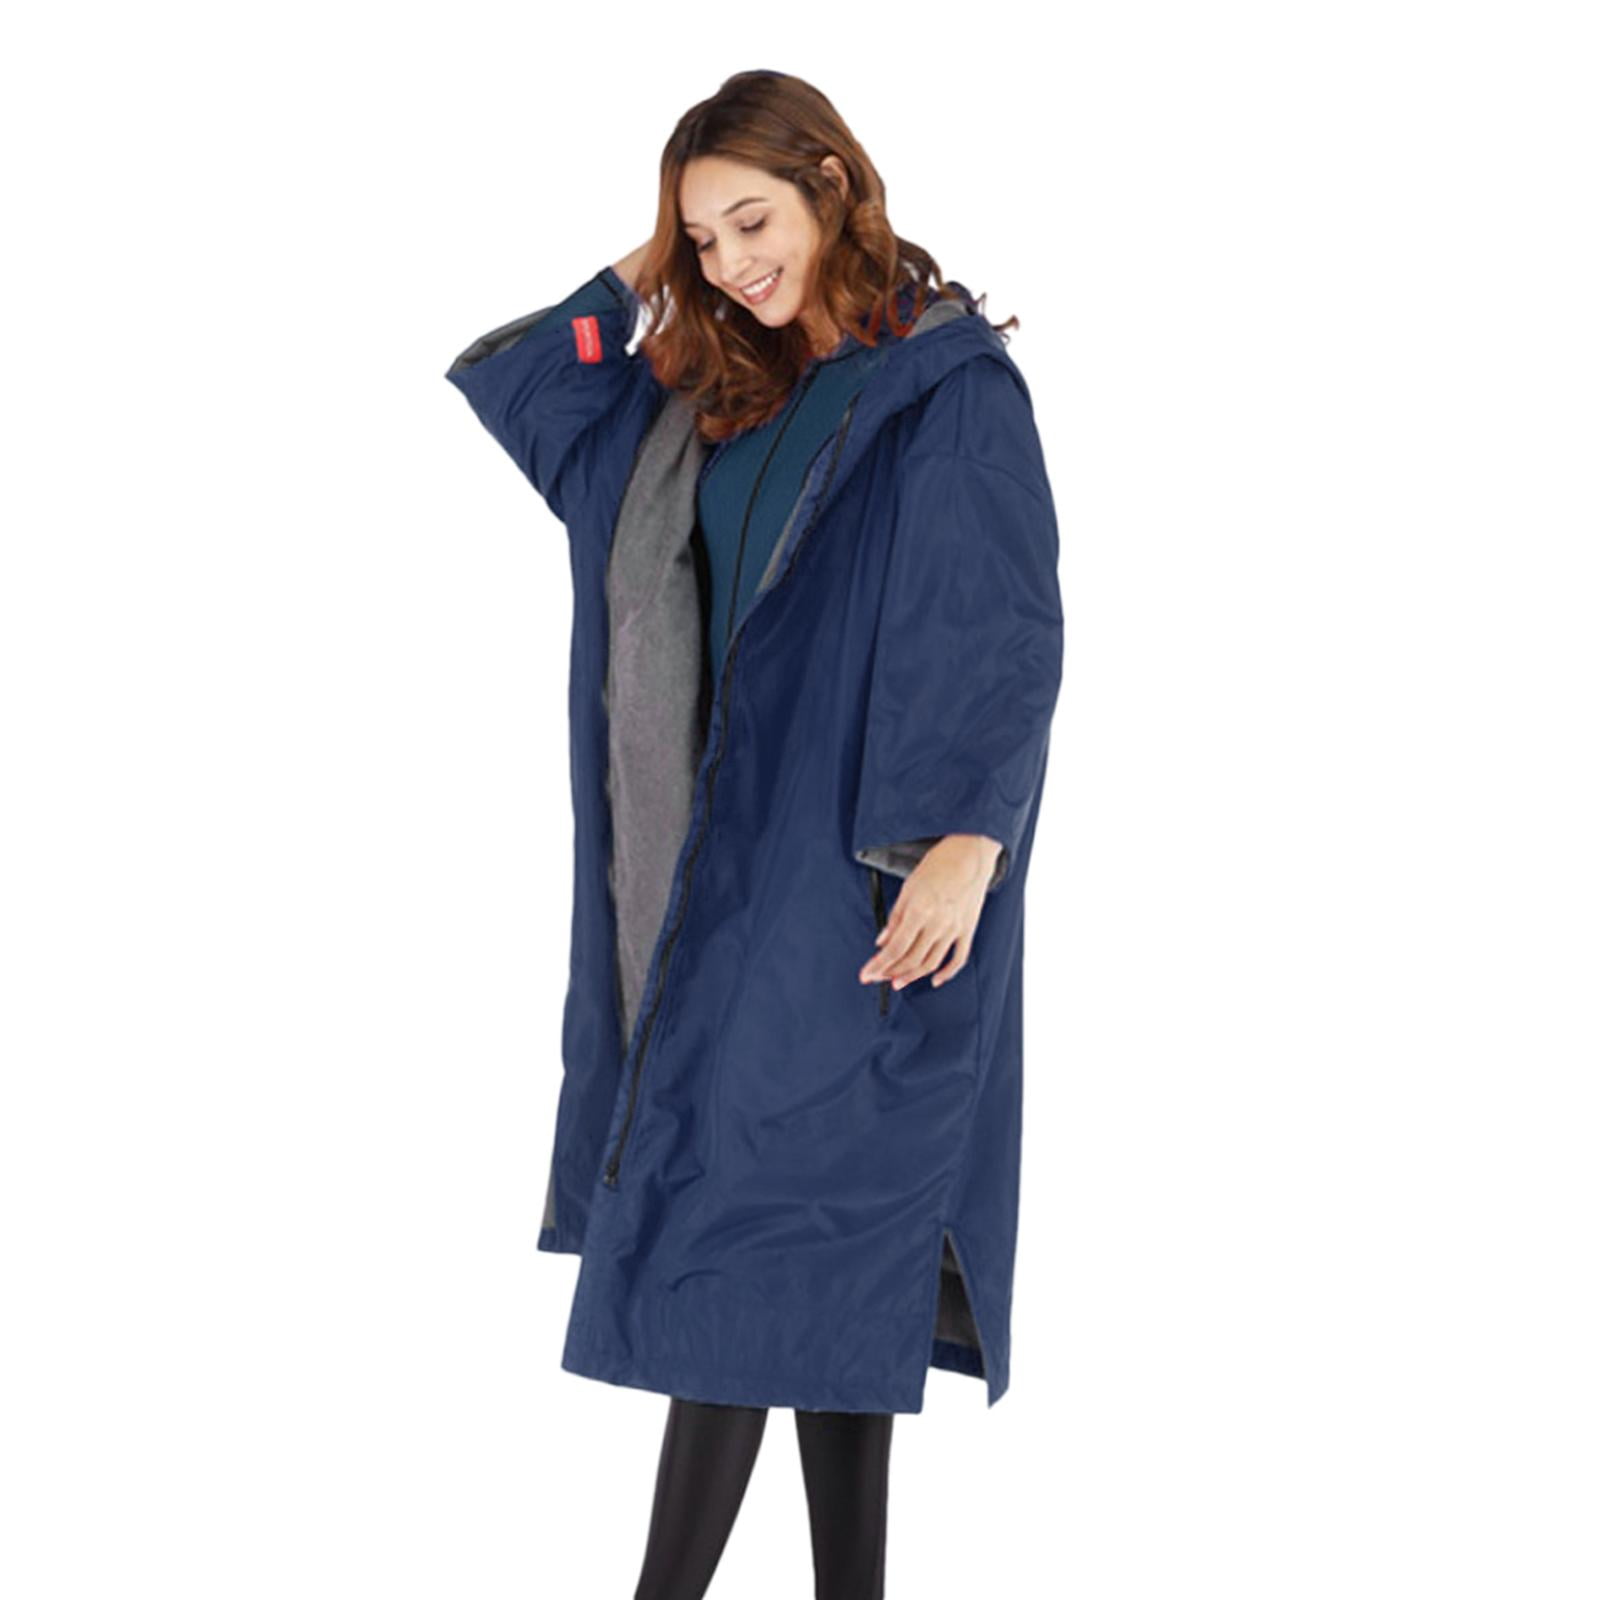 Details about   Full Zip Warm Robe Fleece Lining Hooded Anorak Sports Windbreaker Coat Cloak 